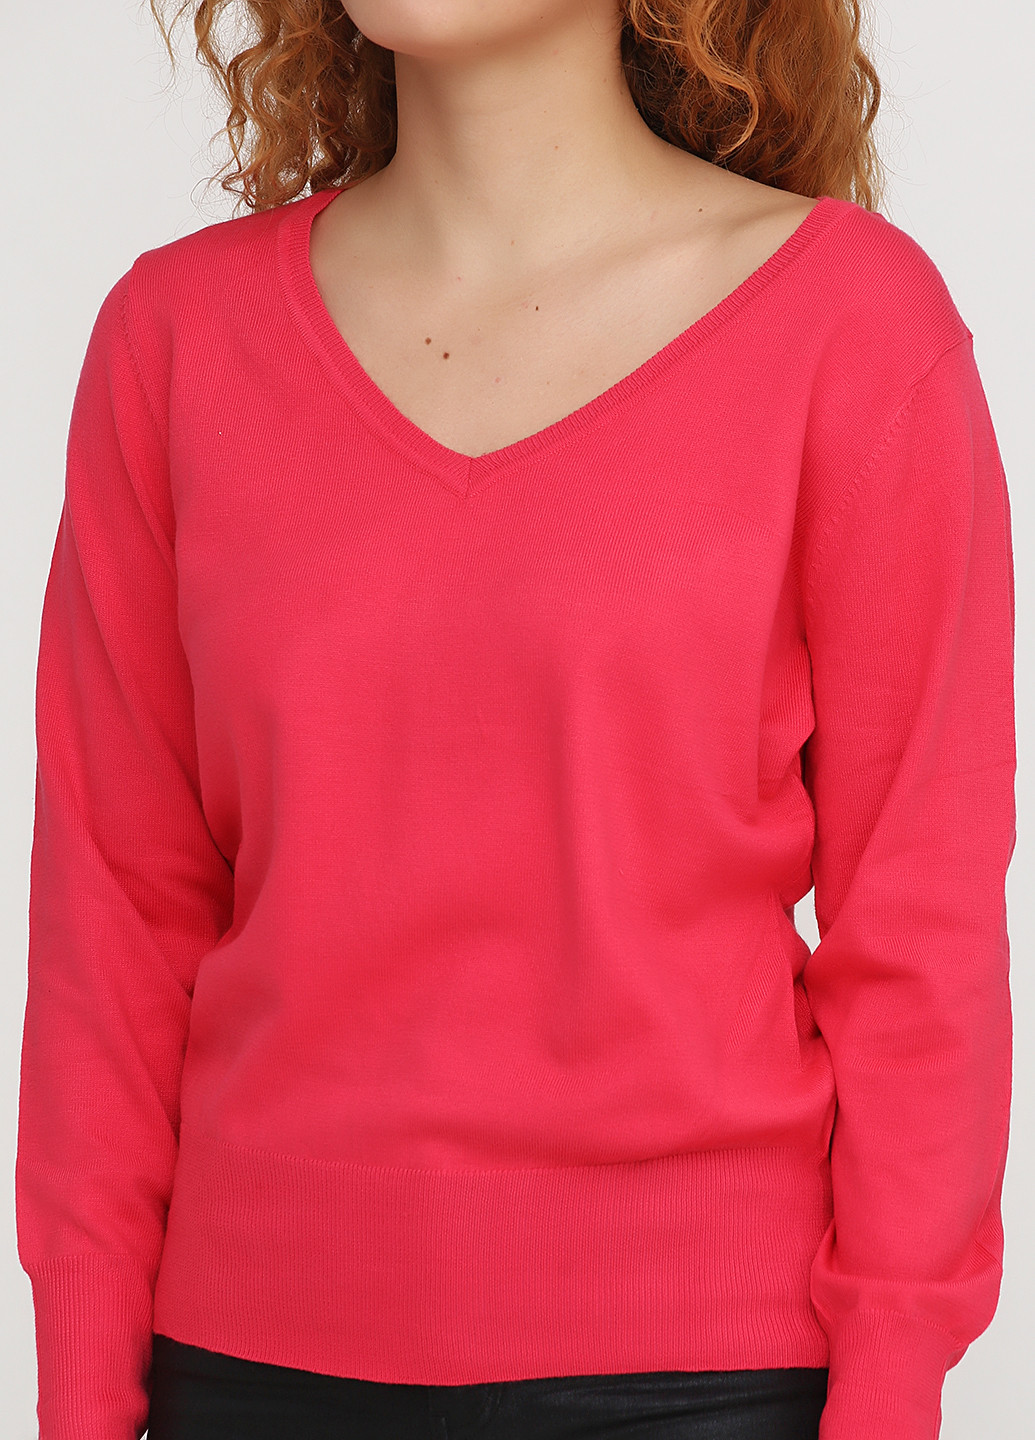 Розовый демисезонный пуловер пуловер Miss Moda